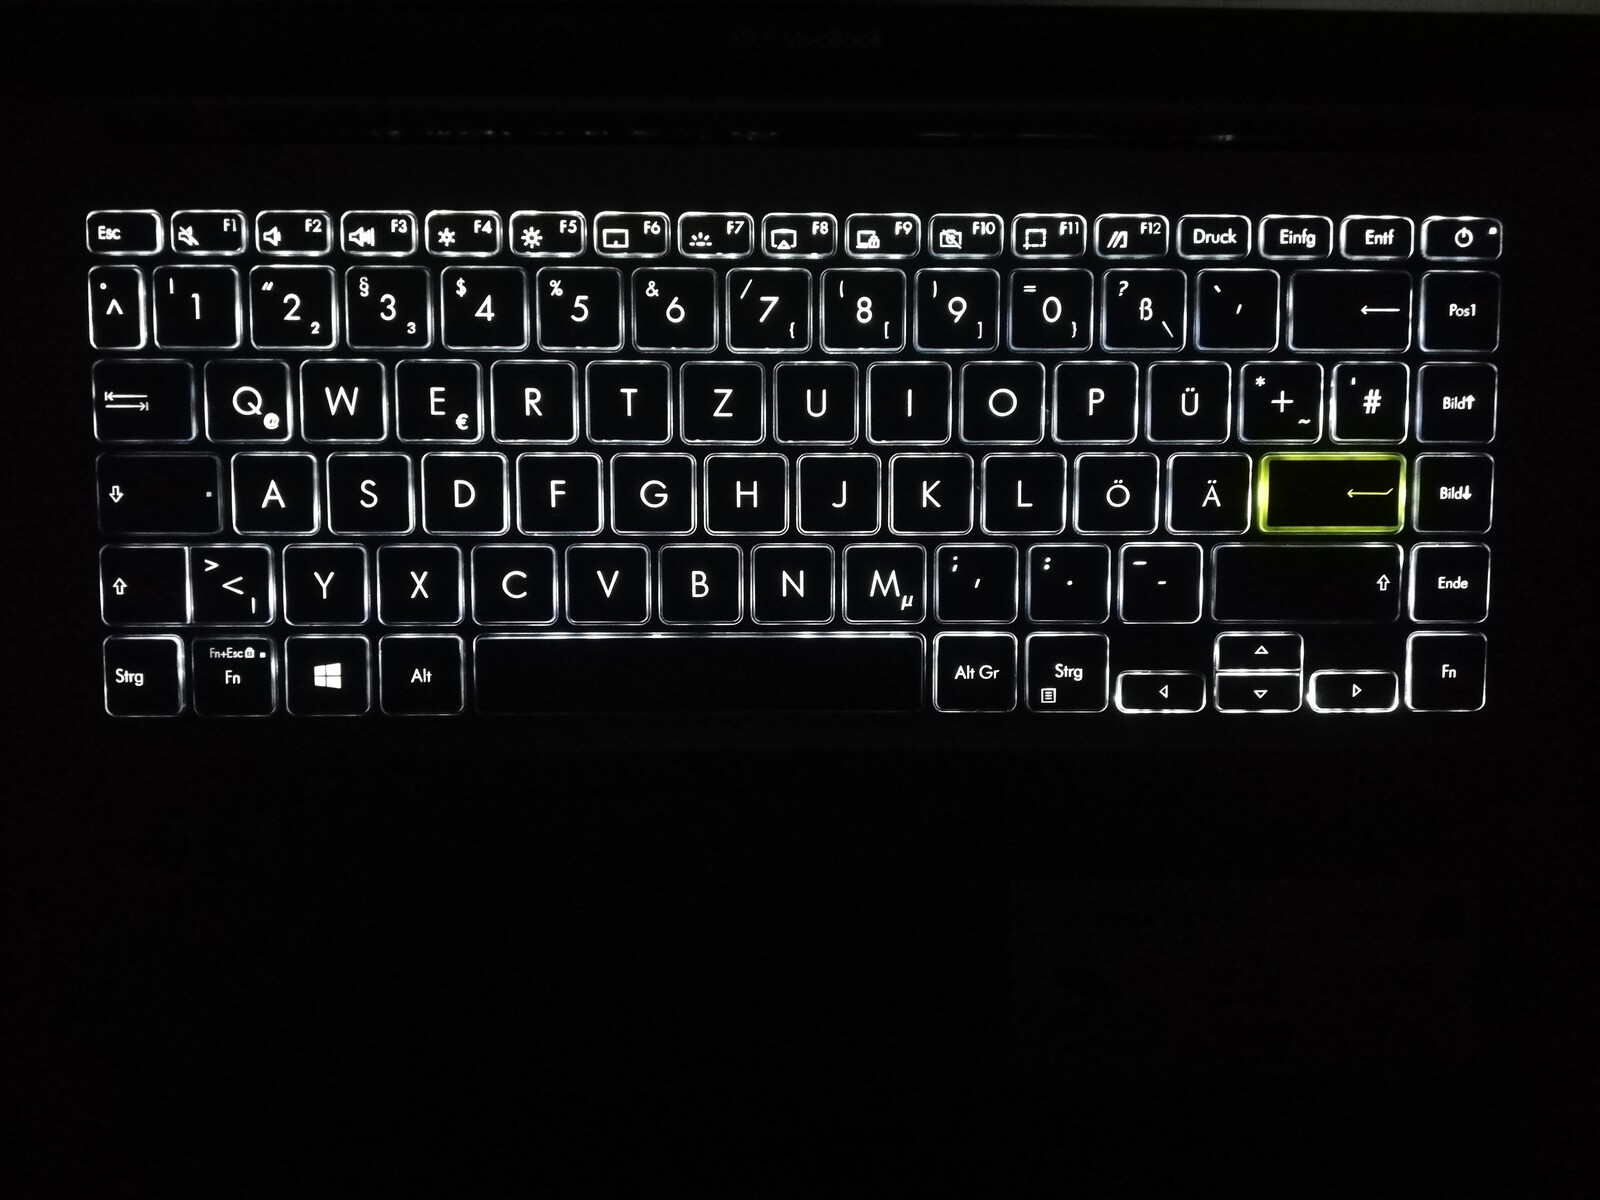 asus keyboard light not working